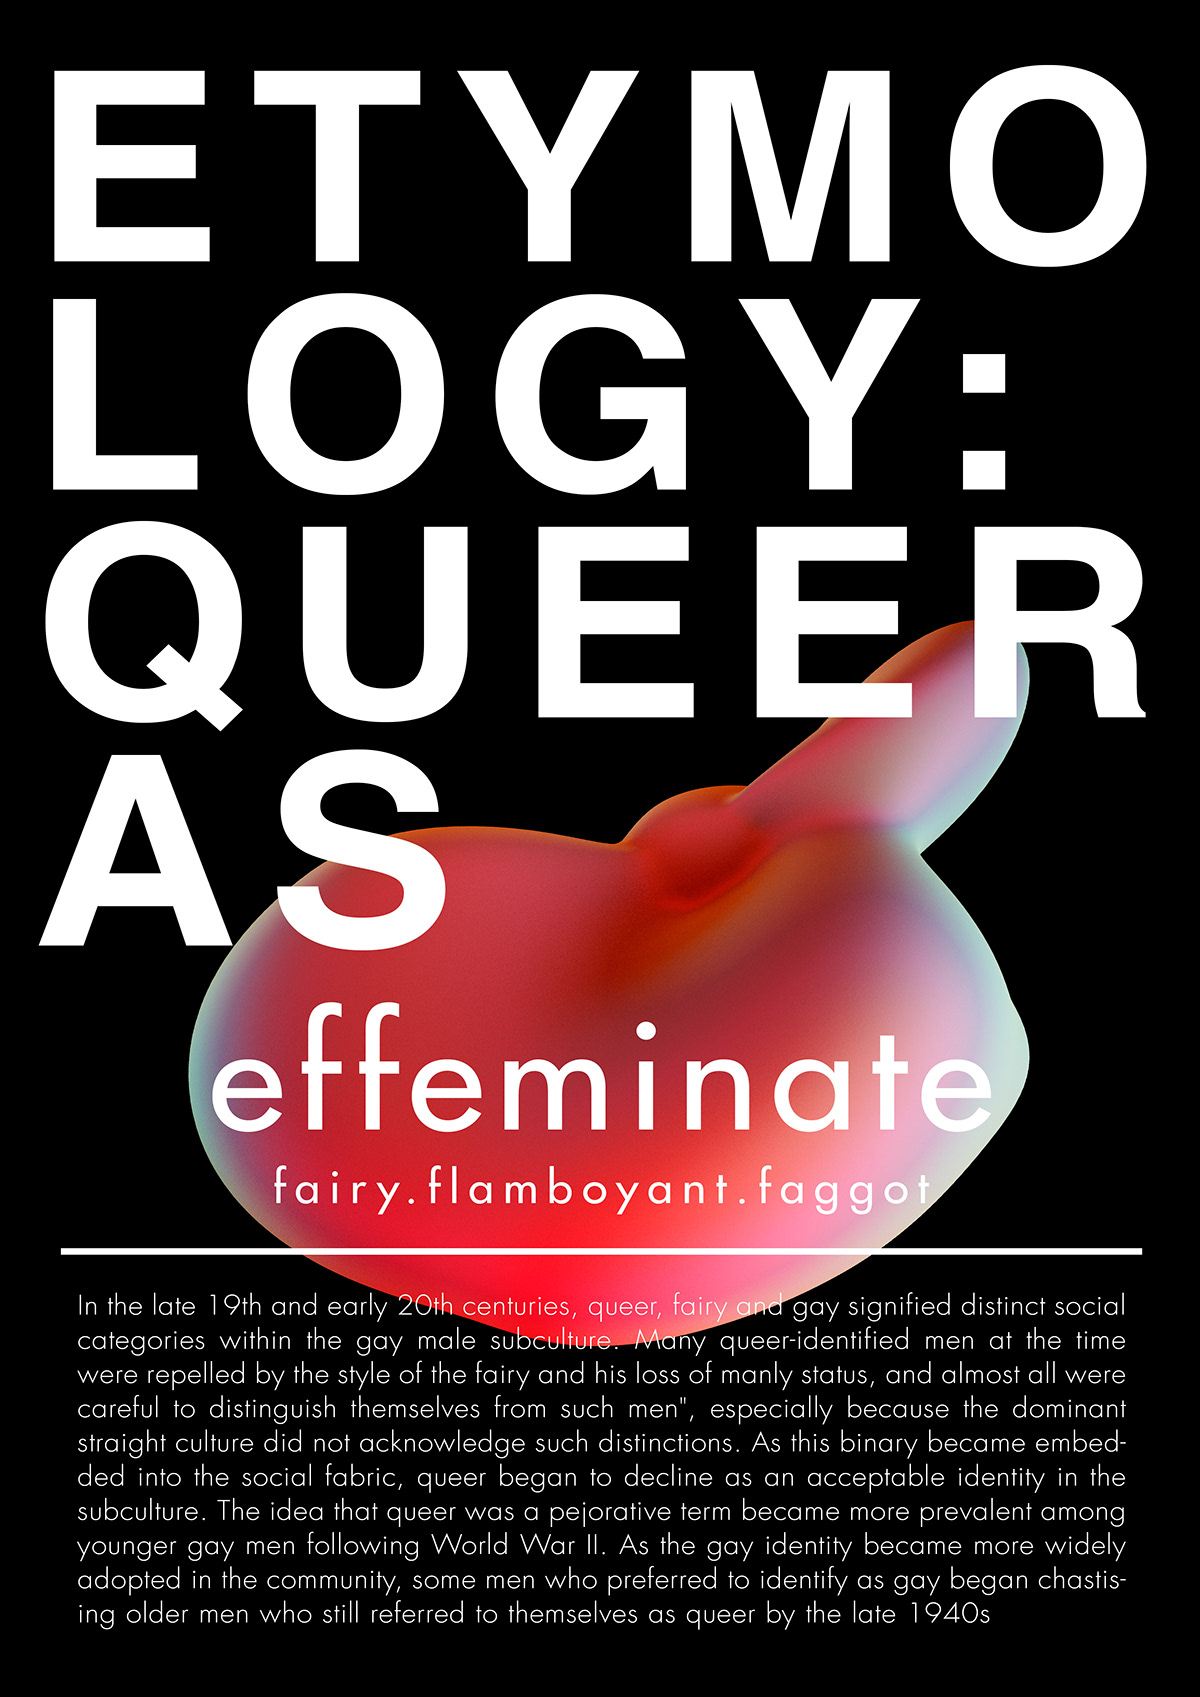 Adobe Portfolio poster Graphic Designer typography   queer art artwork queerartist